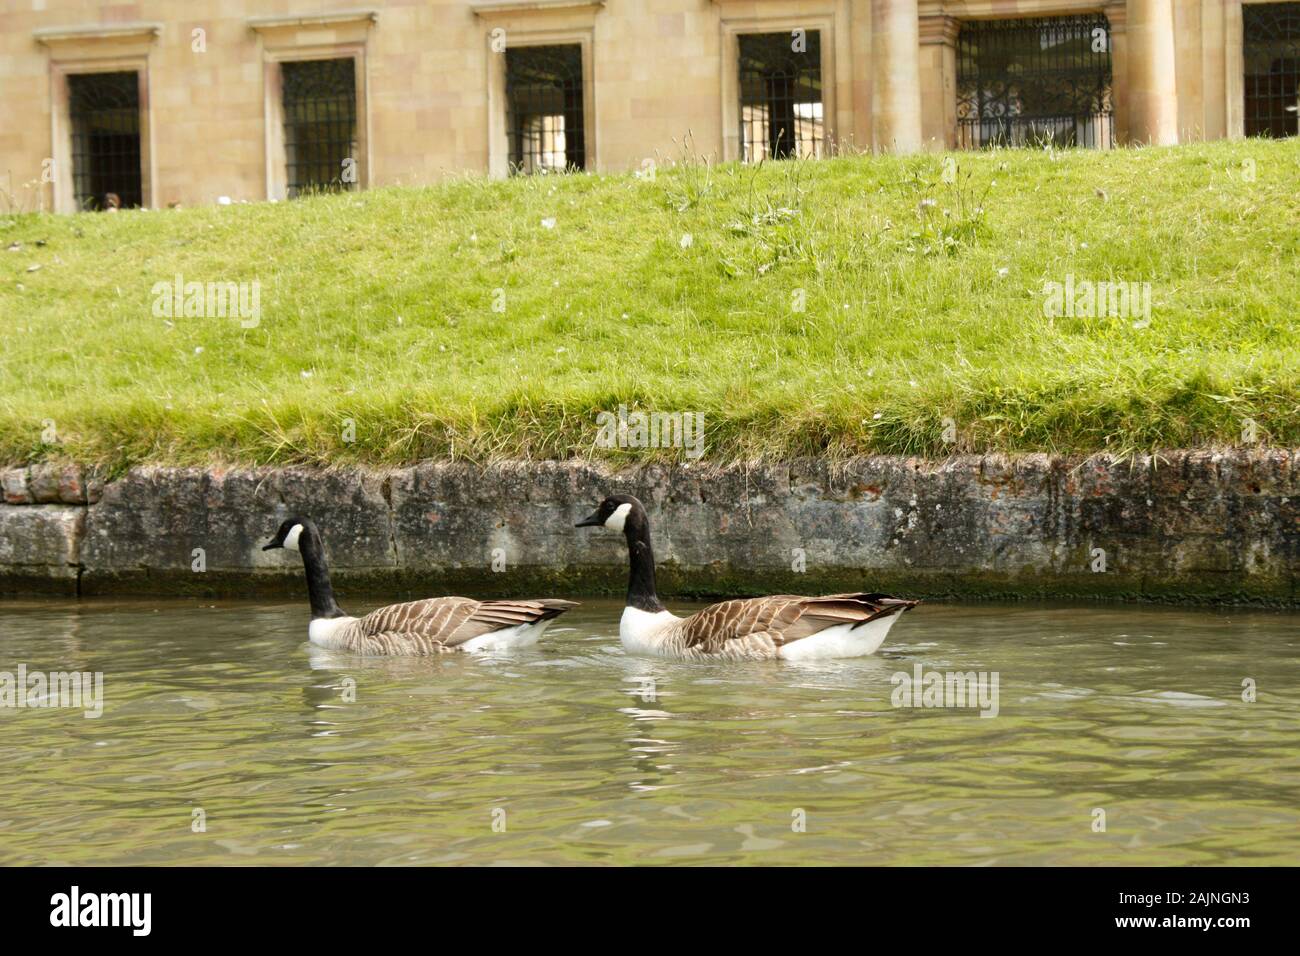 Ducks swimming in cambridge River Stock Photo